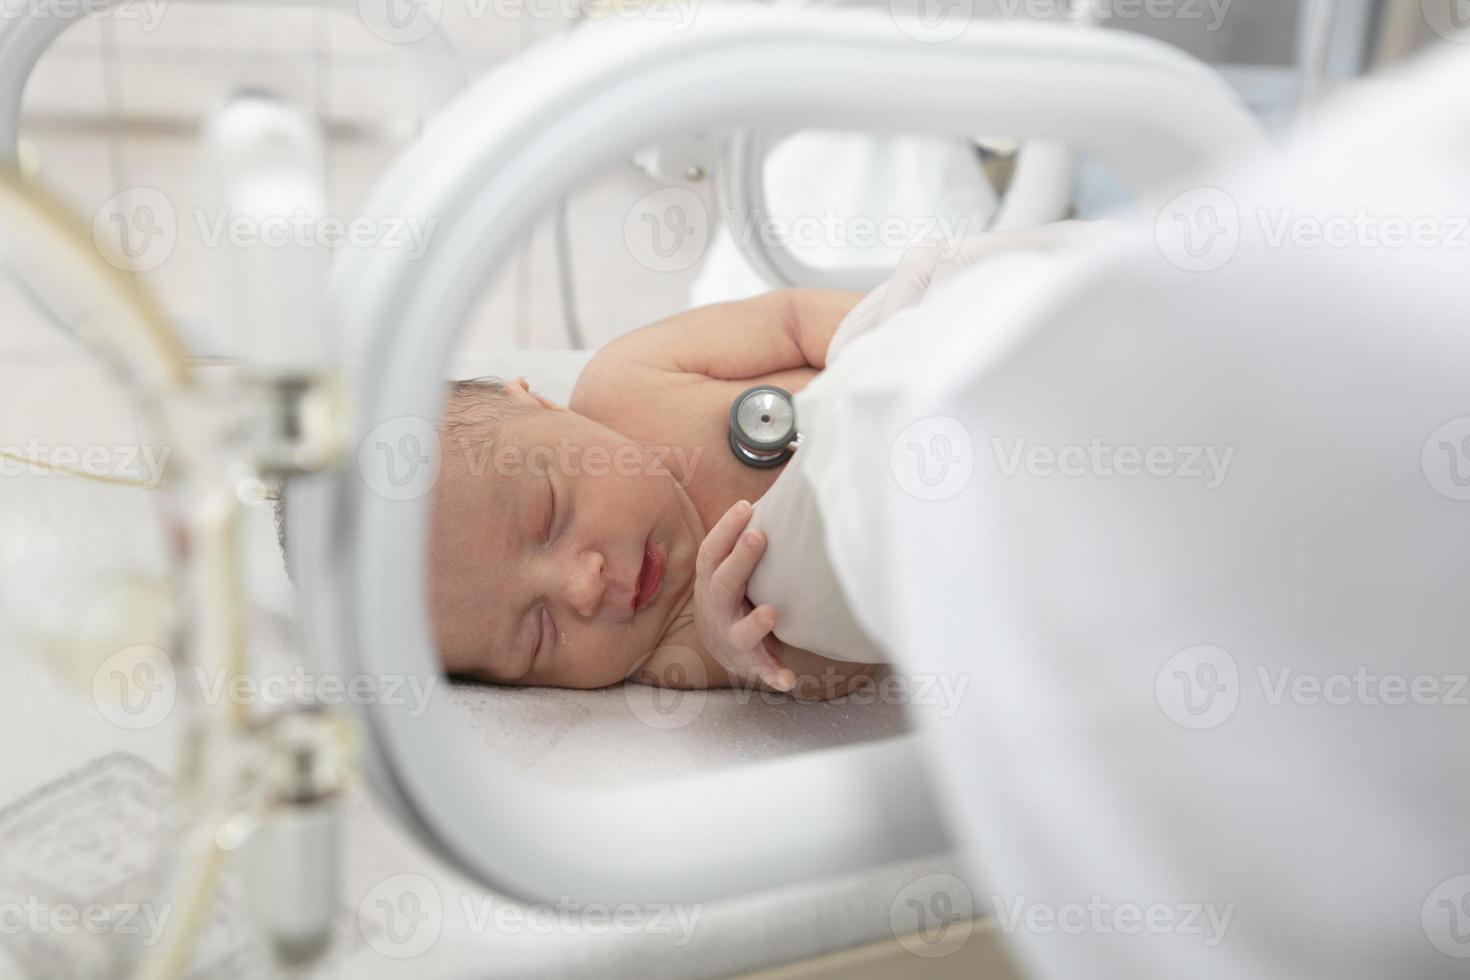 un nouveau-né se trouve dans des boîtes à l'hôpital. un enfant dans une couveuse. unité de soins intensifs néonatals et prématurés photo